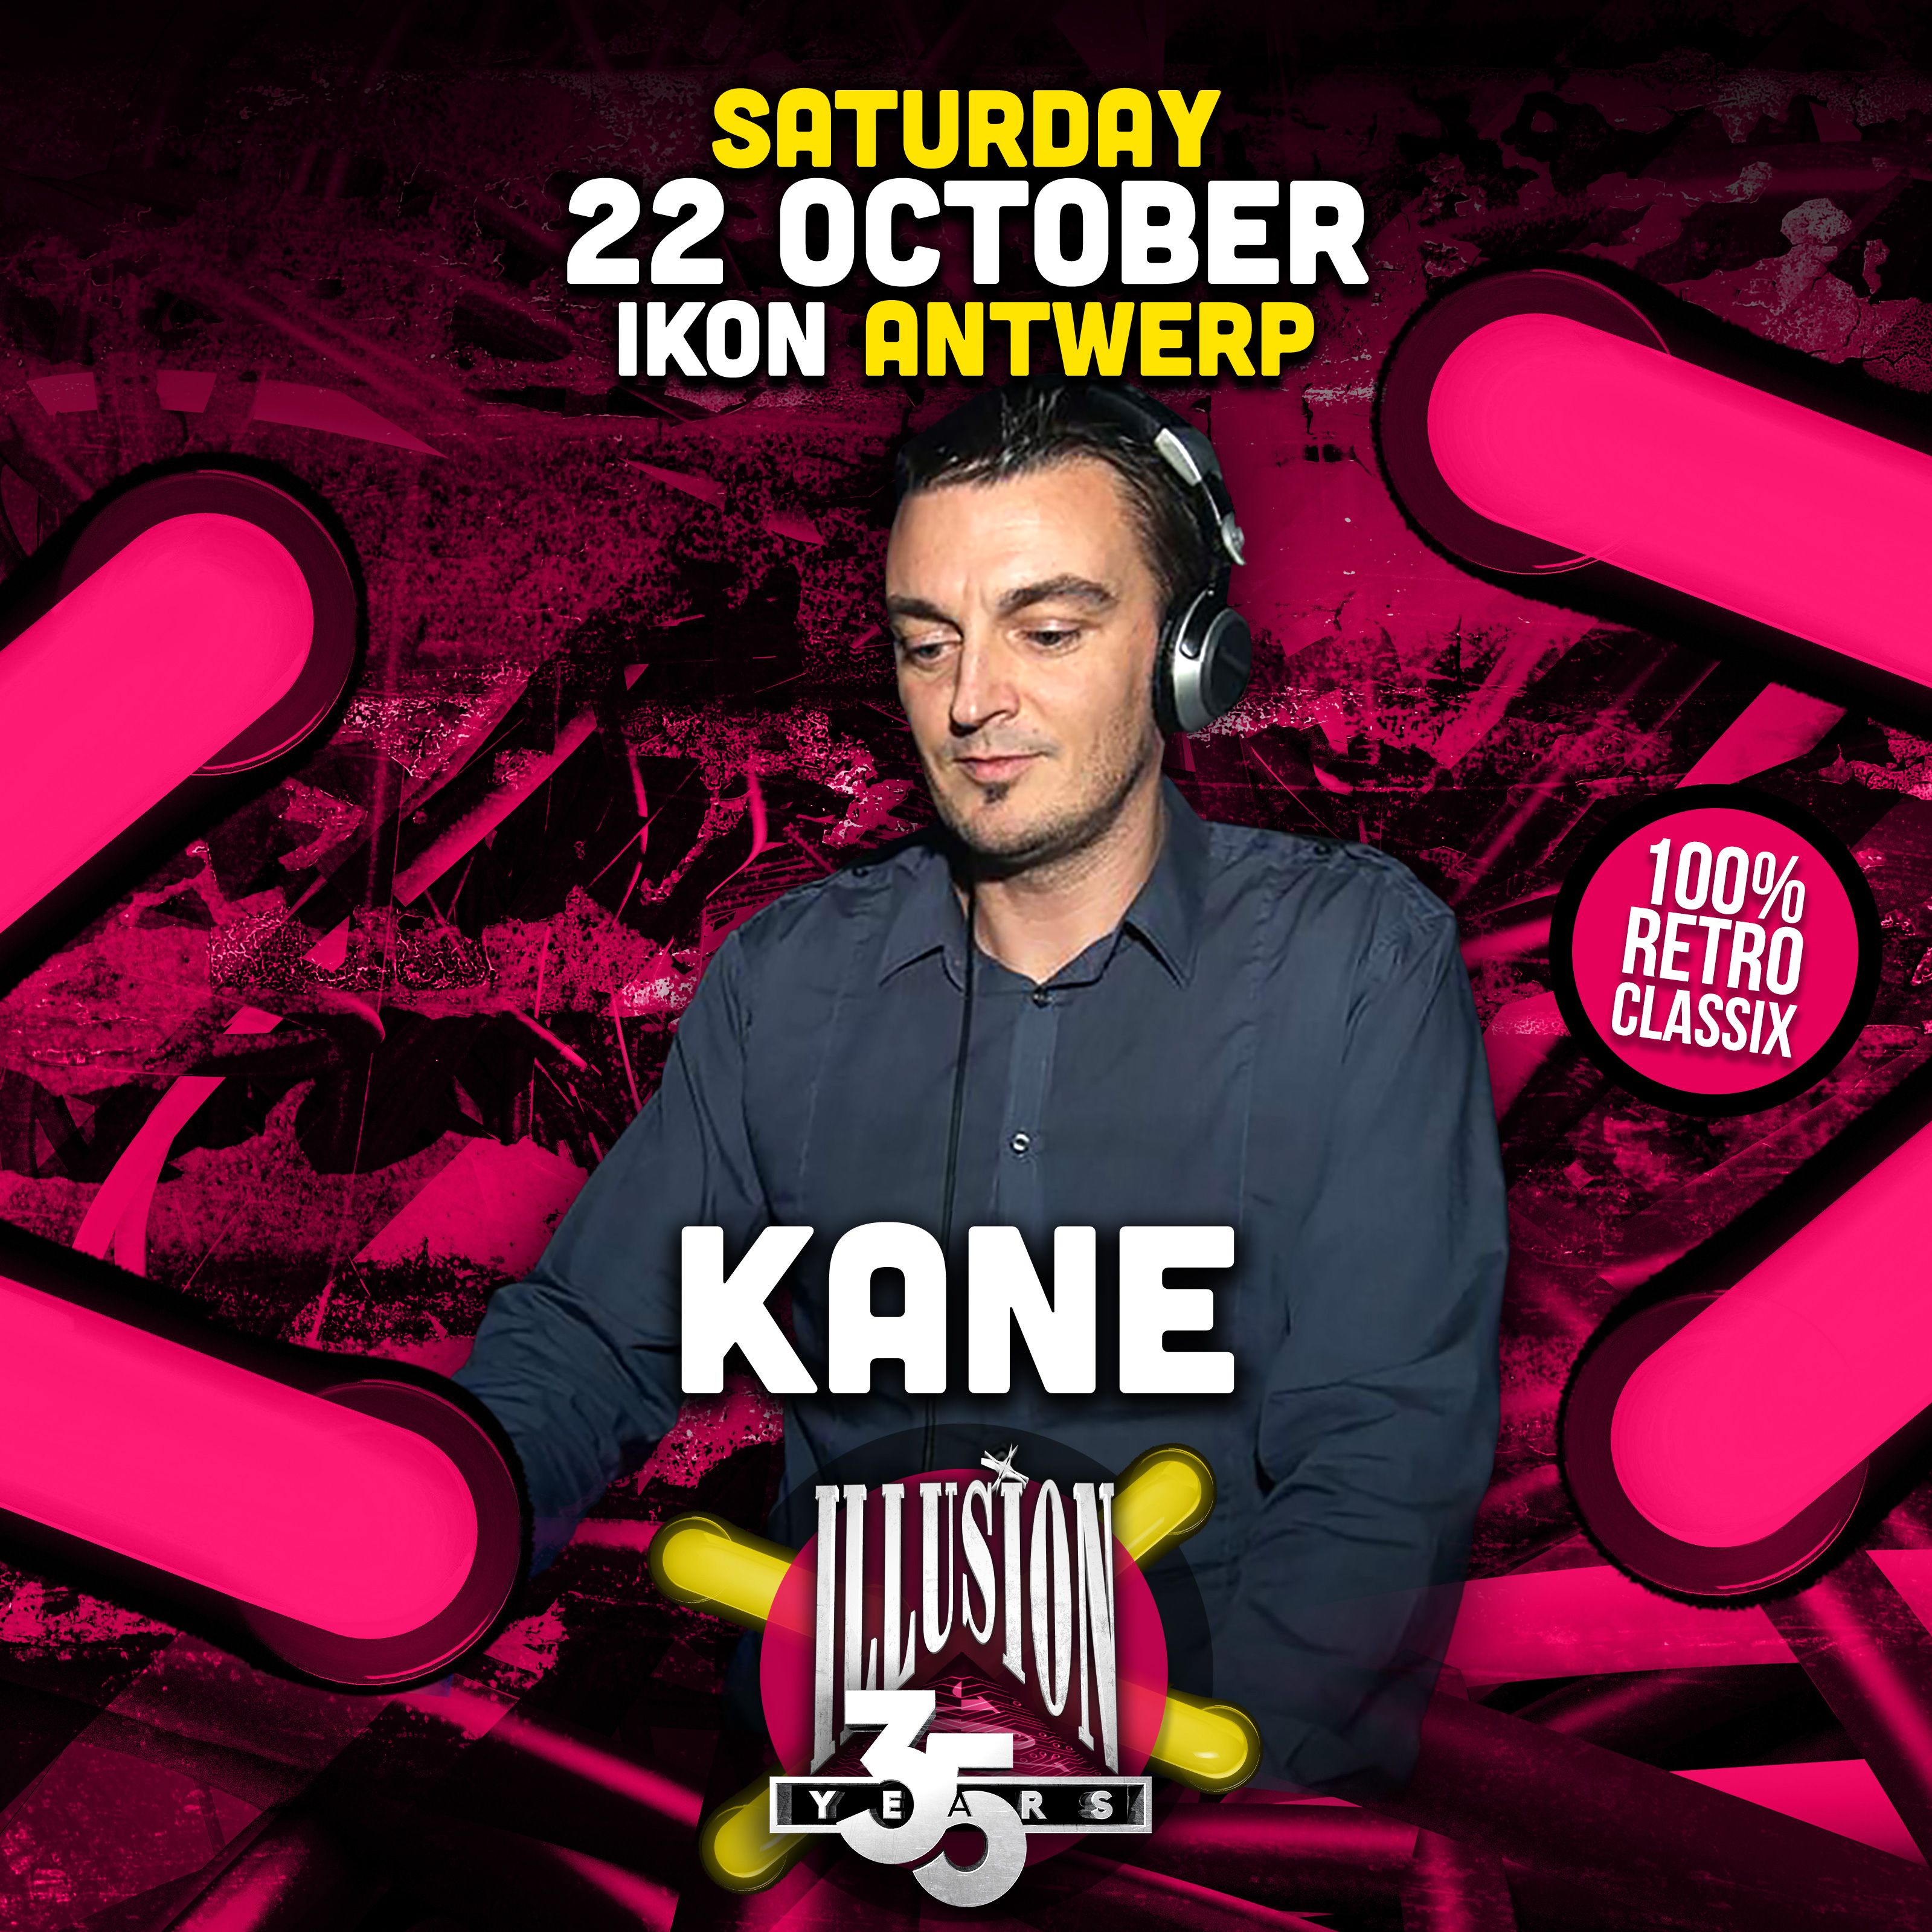 01 - DJ Kane - 35 Years Illusion - The Ground Level at IKON